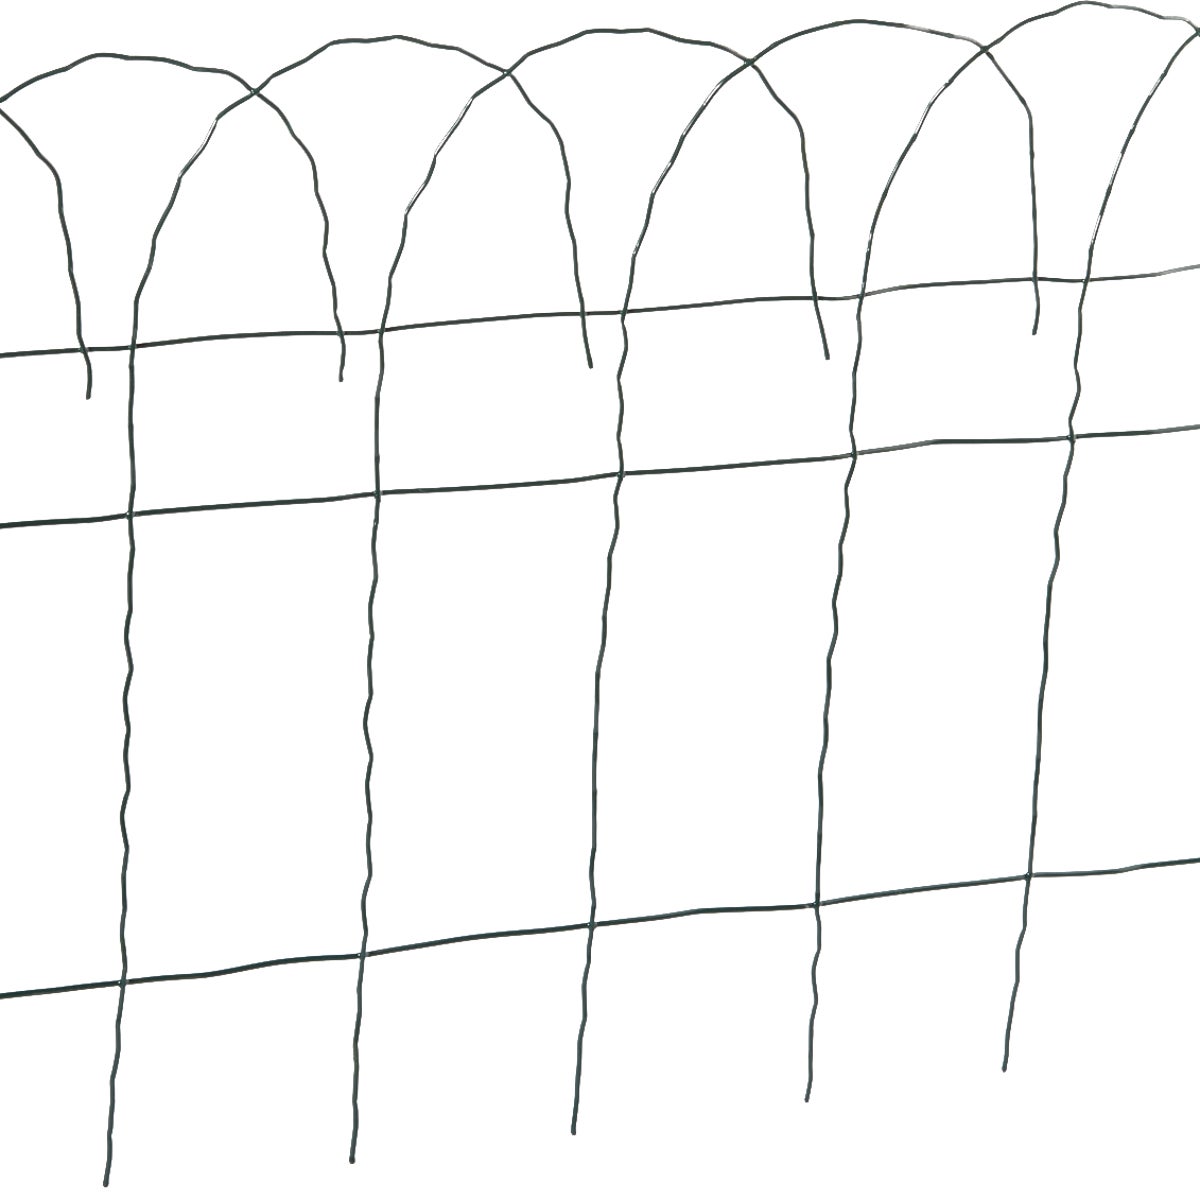 Best Garden 700789 Best Garden 14 In. H x 20 Ft. L Galvanized Wire Decorative Border Fence 700789